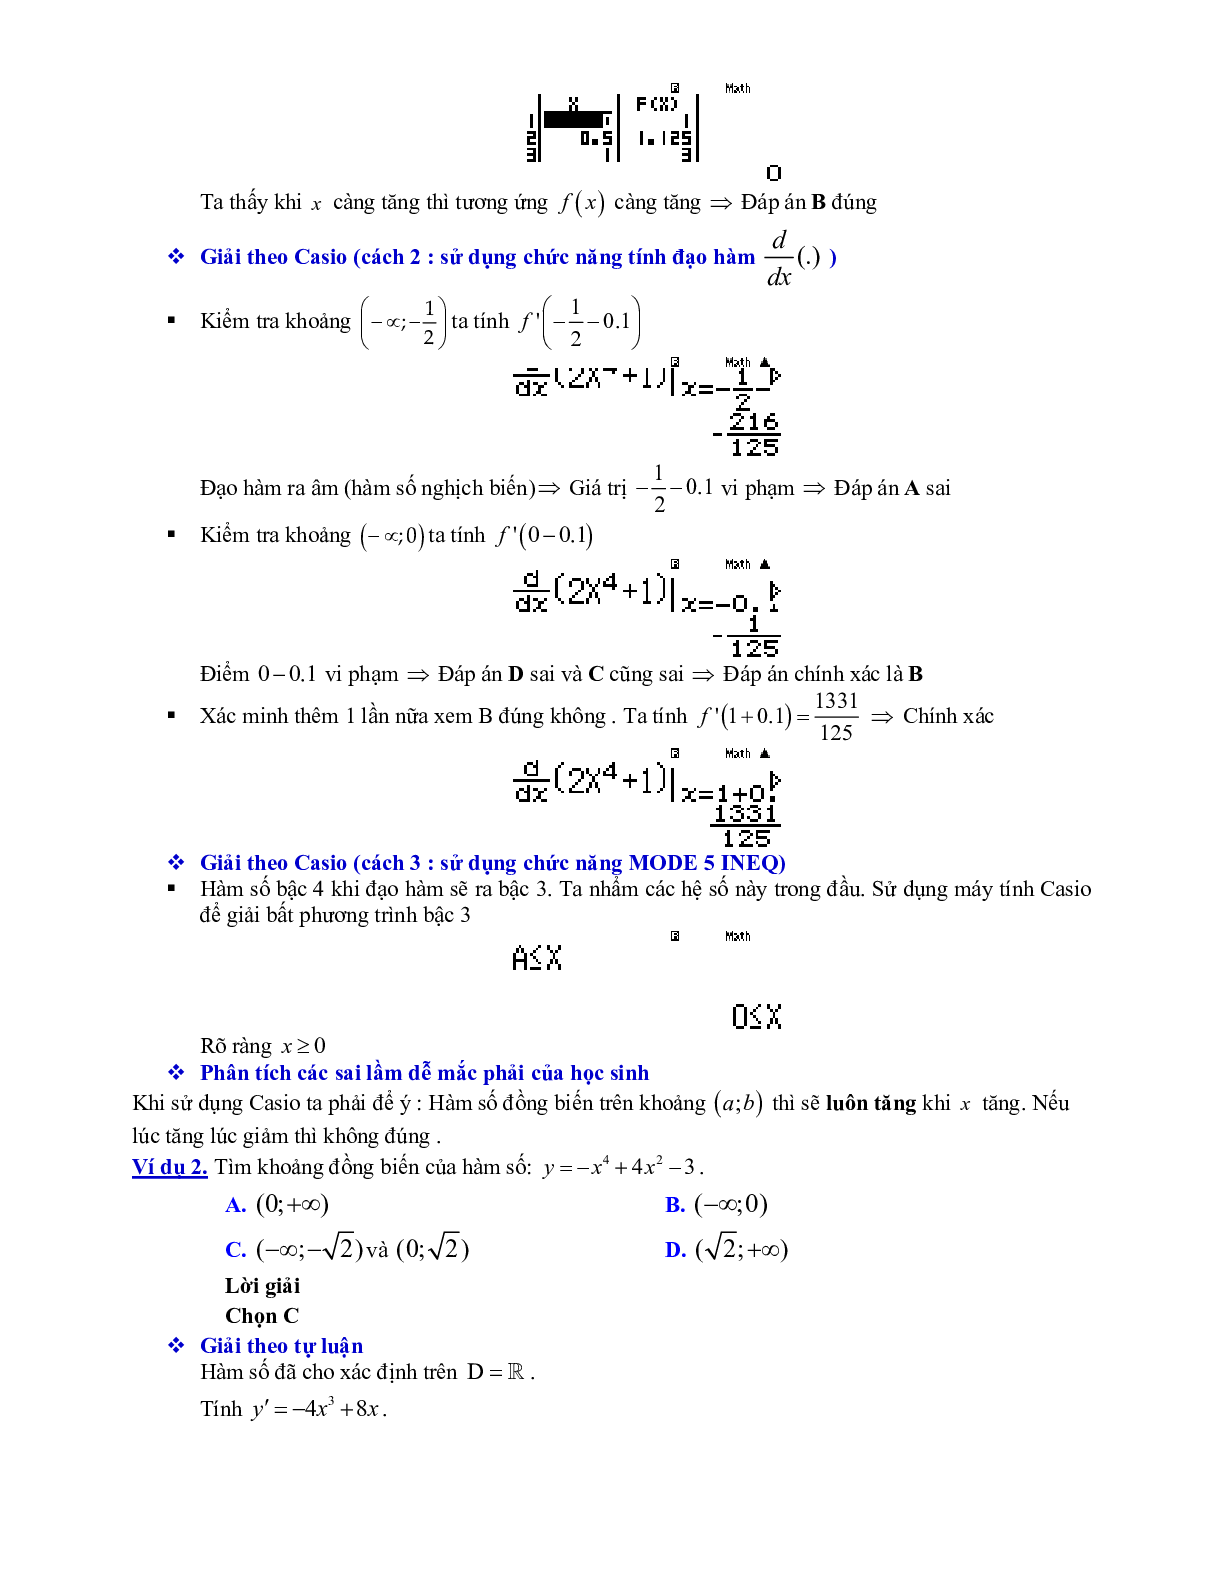 Lý thuyết và bài tập xét tính đơn điệu của hàm số ôn thi THPTQG (trang 8)